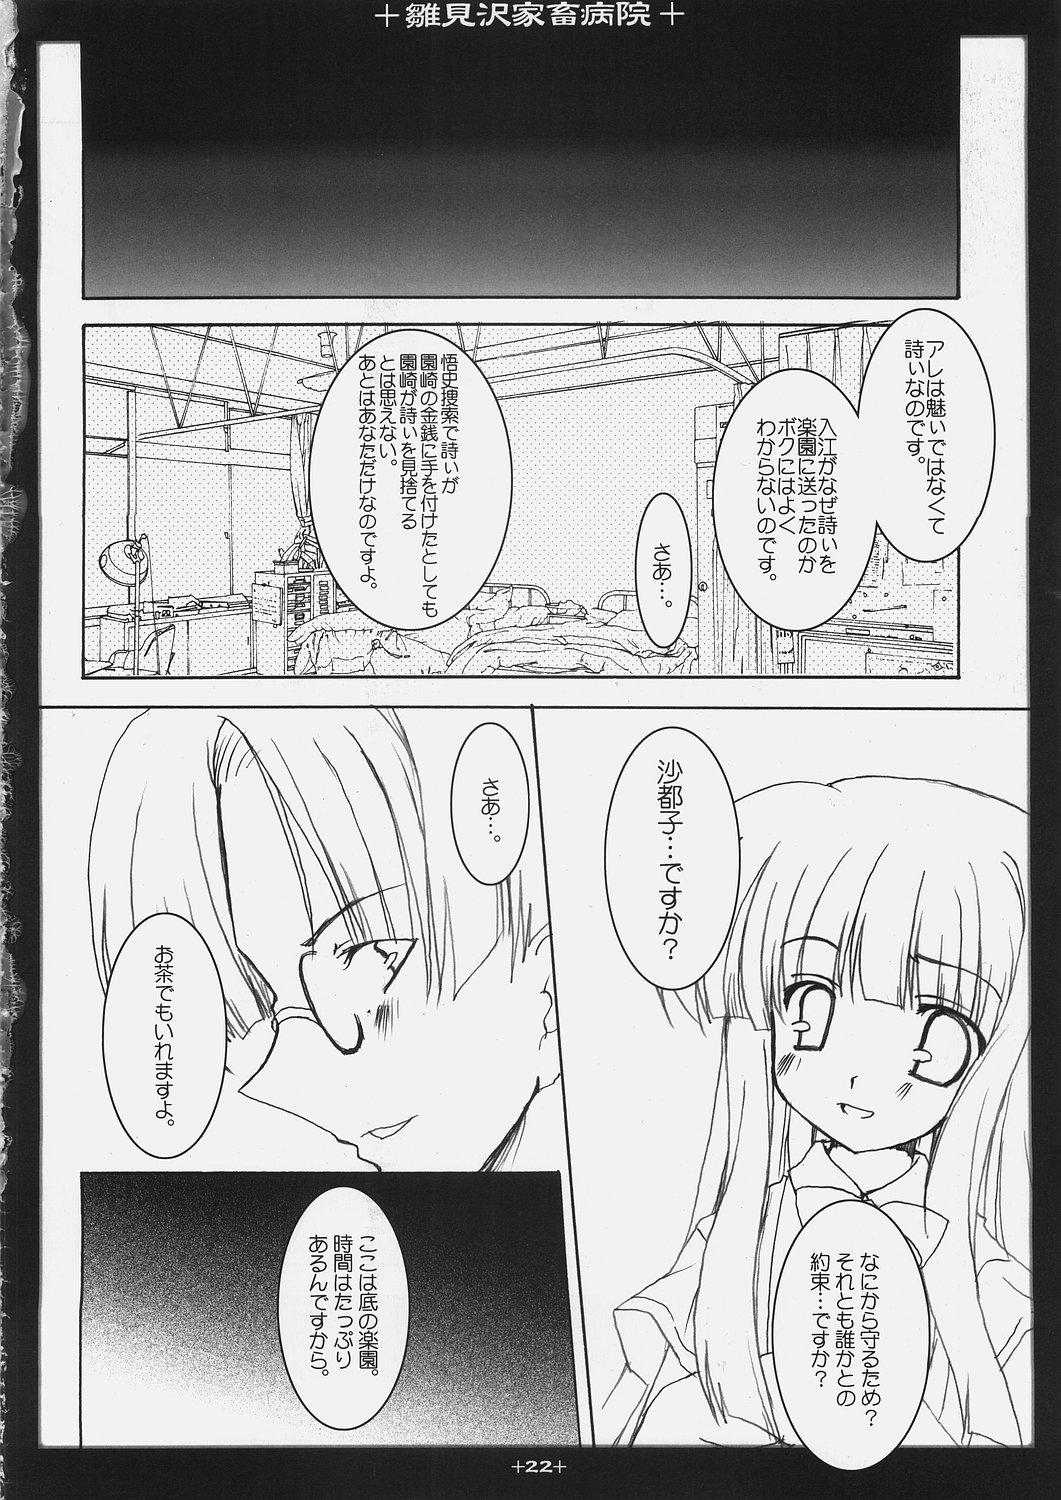 Sexy Sluts Hinamizawa Kachiku Byouin - Higurashi no naku koro ni Bathroom - Page 21